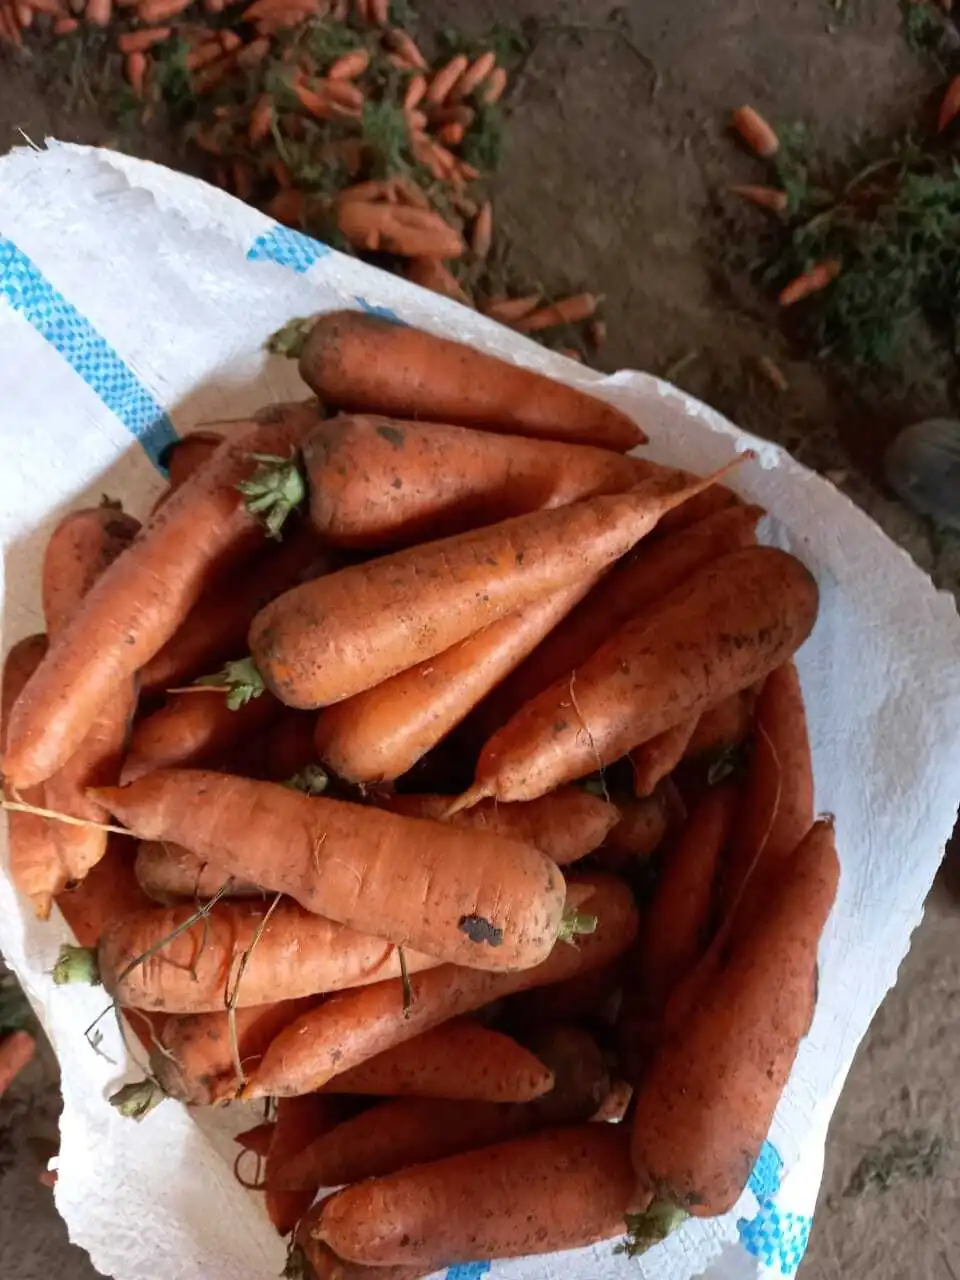 морковь первый сорт Сетевое Качество в Волгограде и Волгоградской области